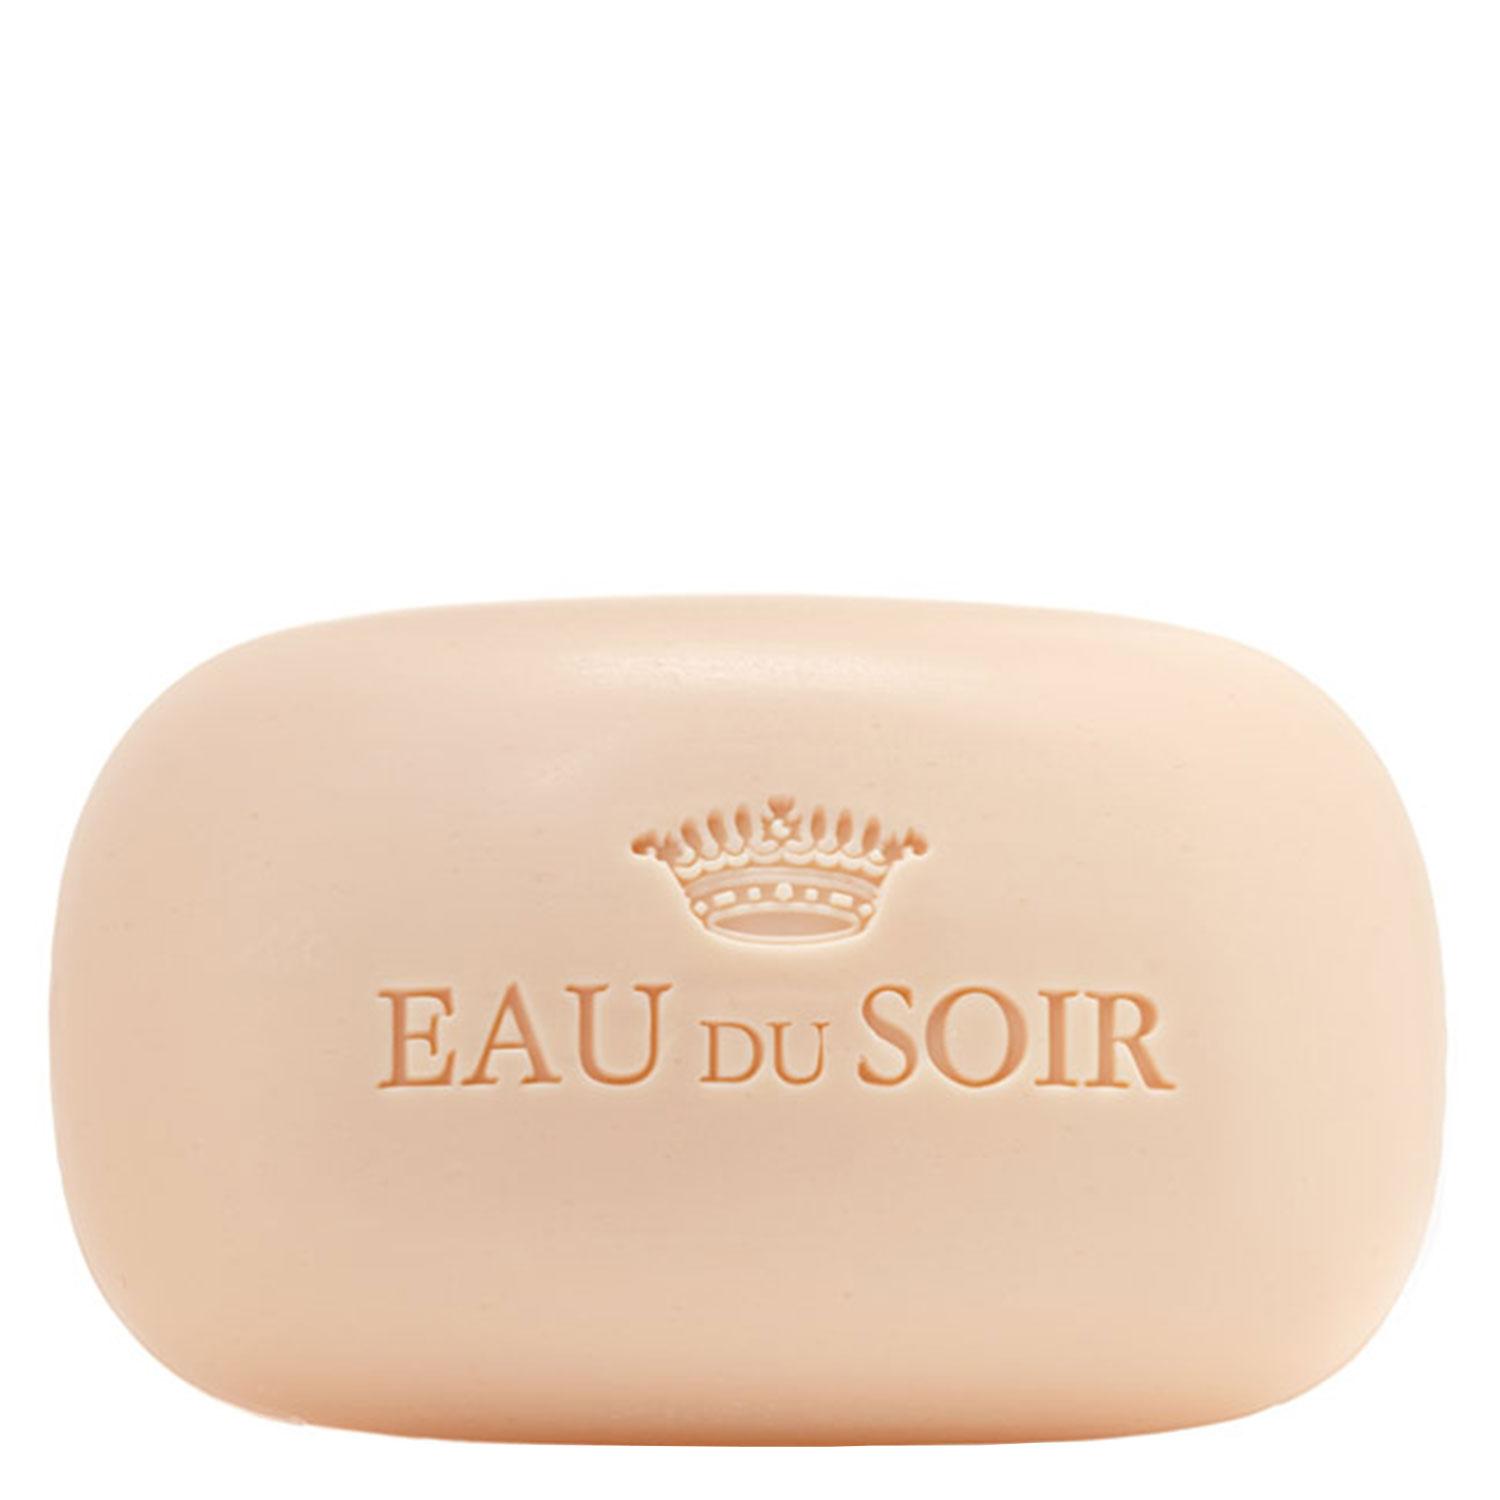 Sisley Fragrance - Eau du Soir Perfumed Soap